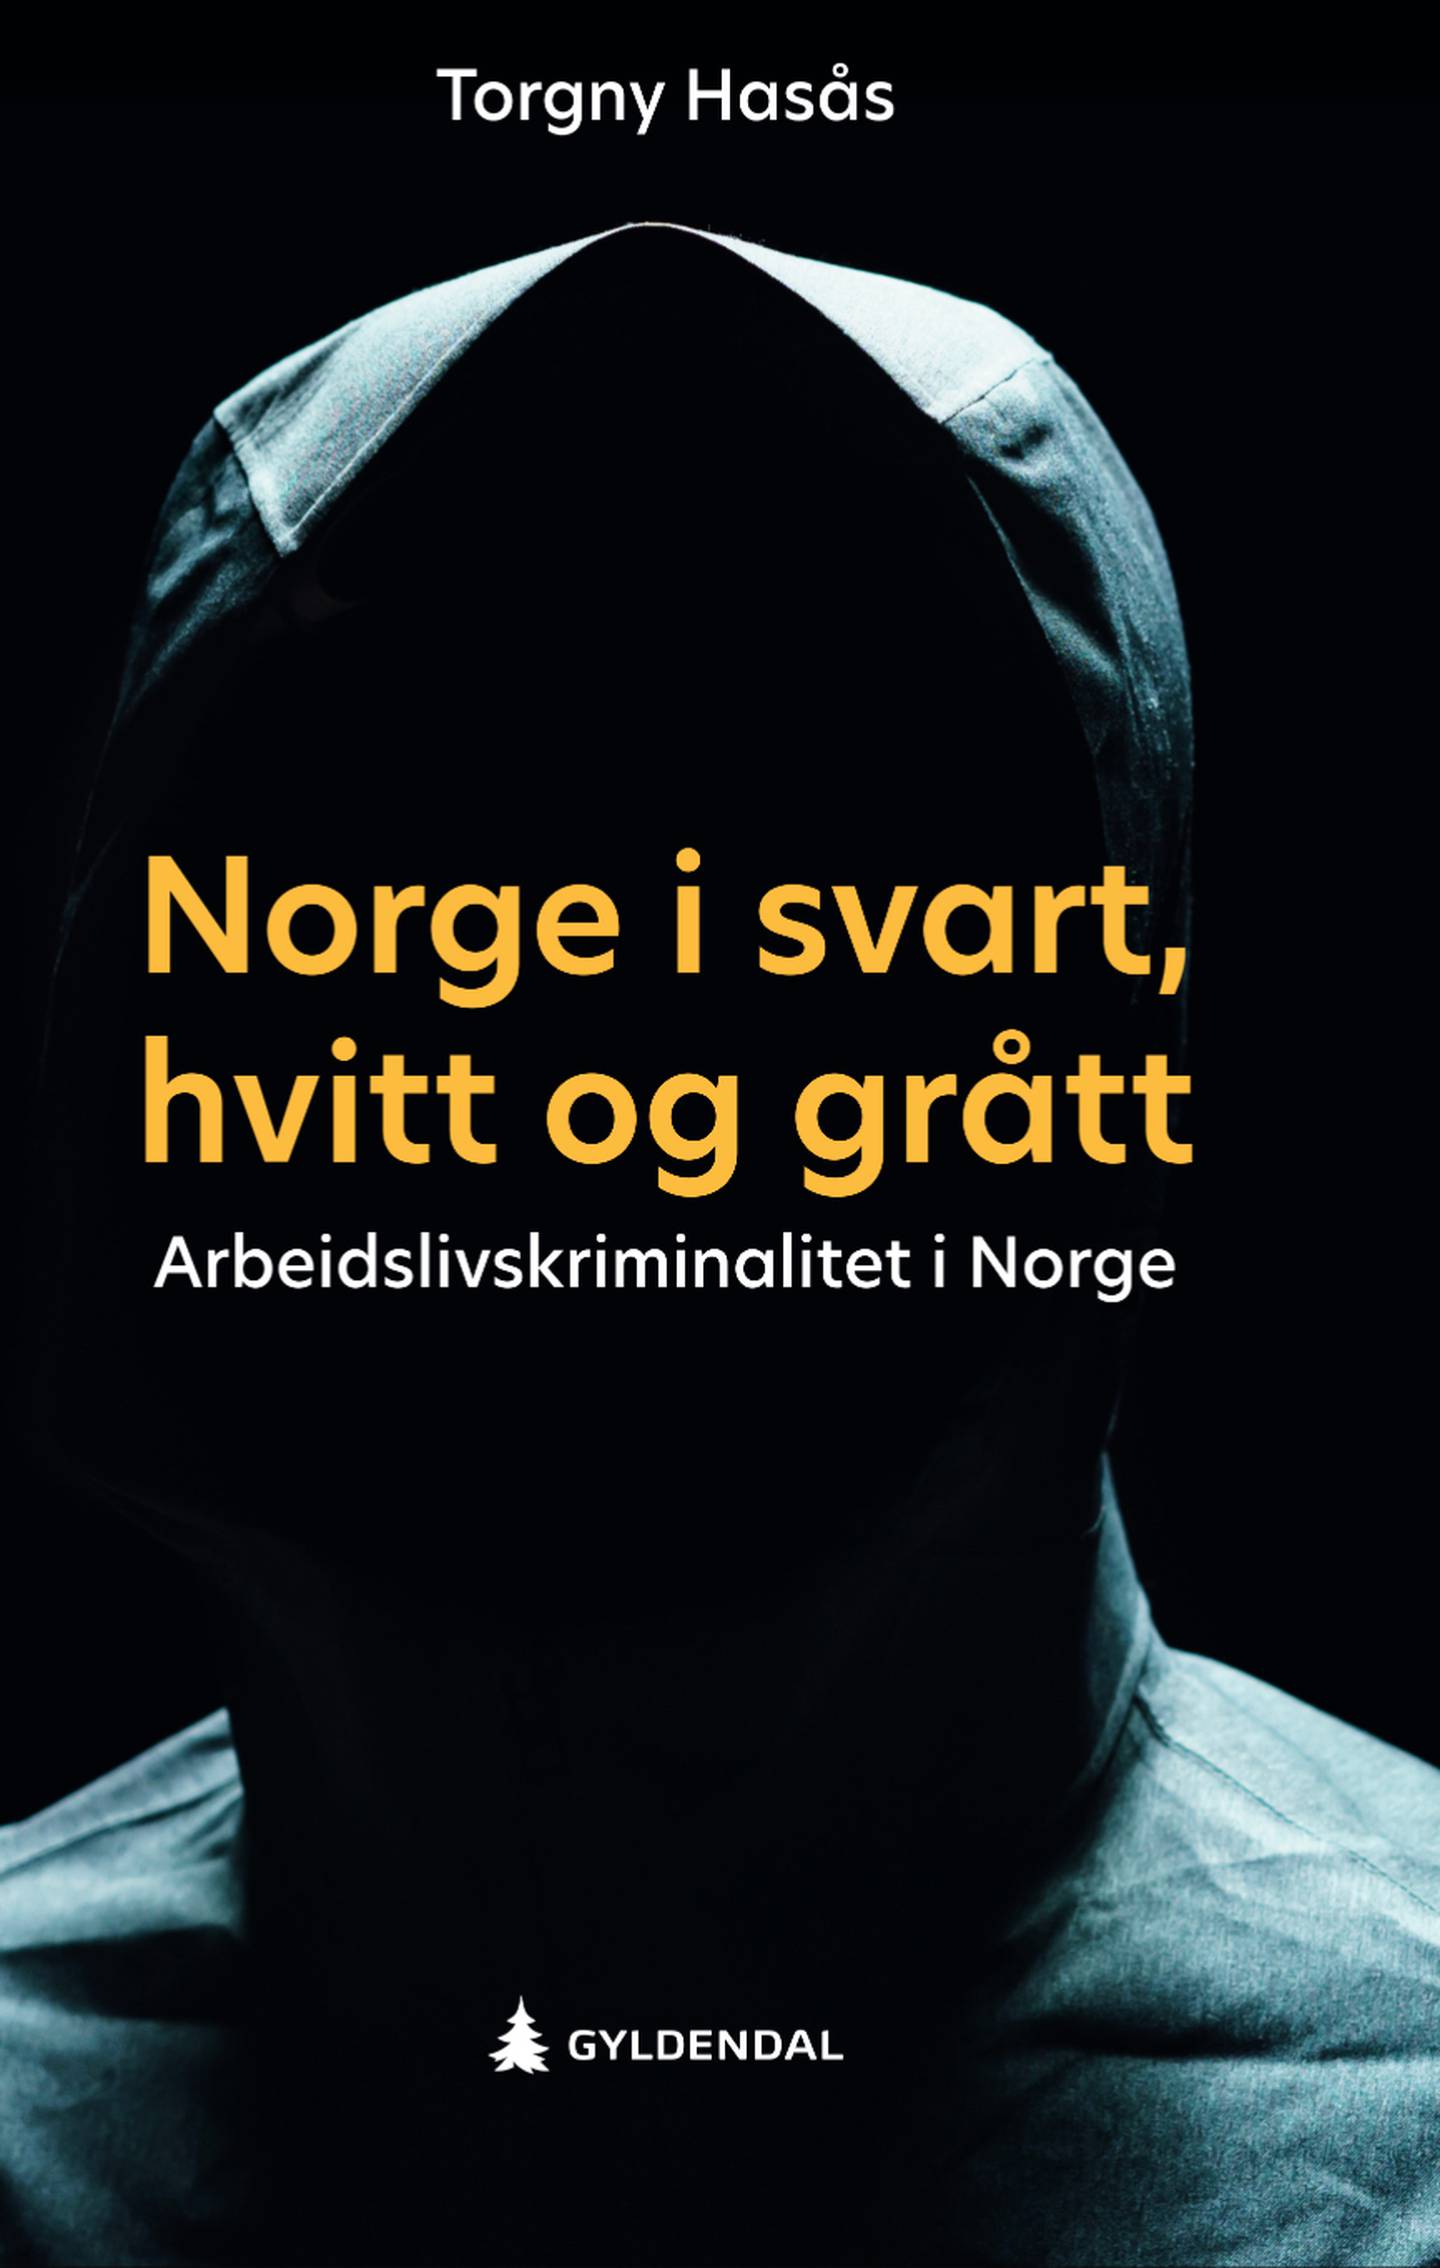 Forsida på boka «Norge i svart, hvitt og grått».